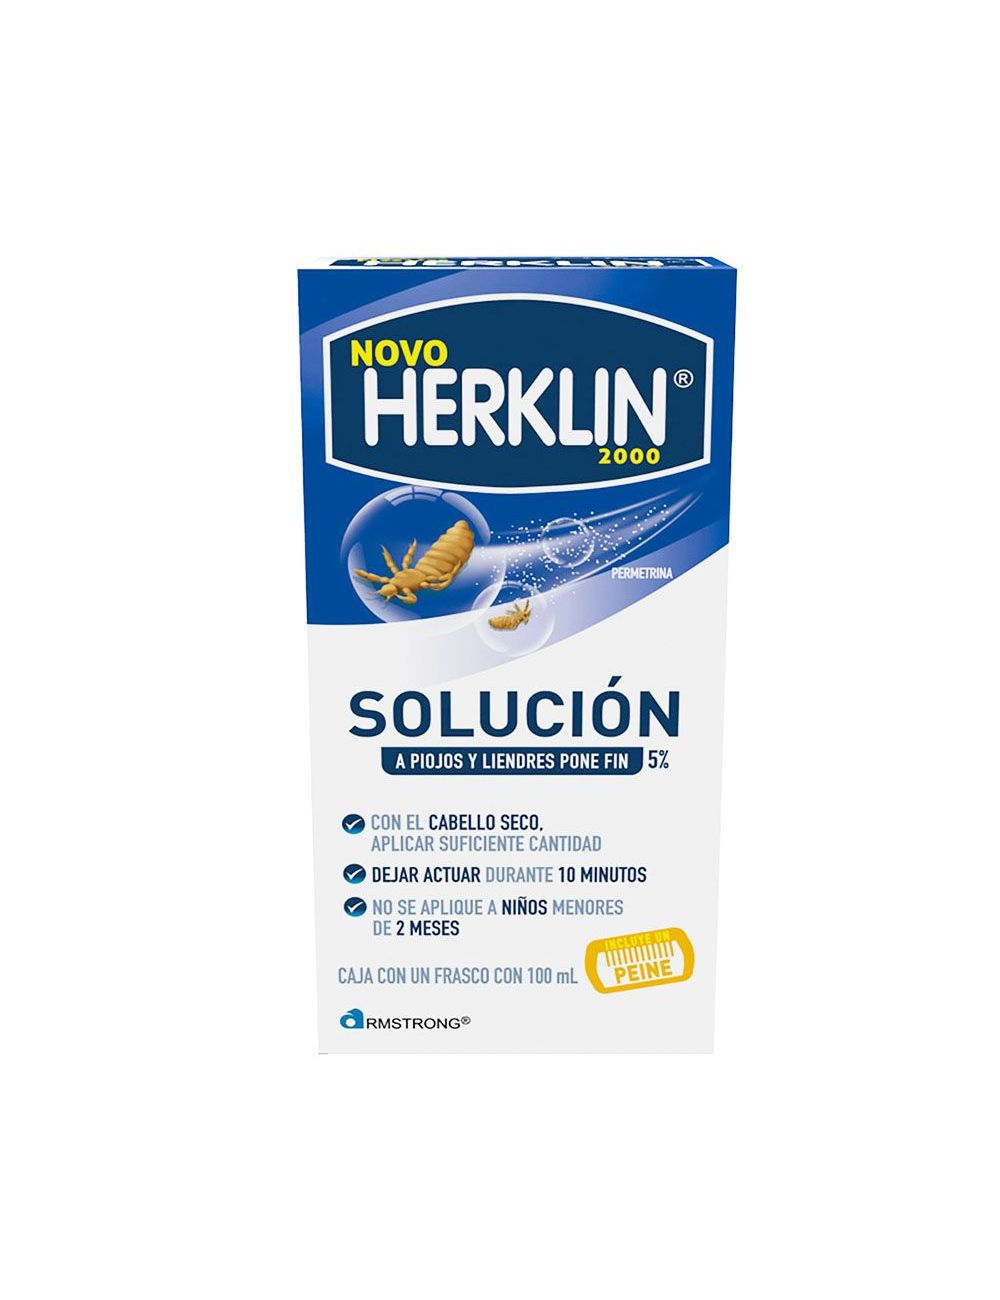 Precio Herklin novo 2000 shampoo 100 mL | Farmalisto MX